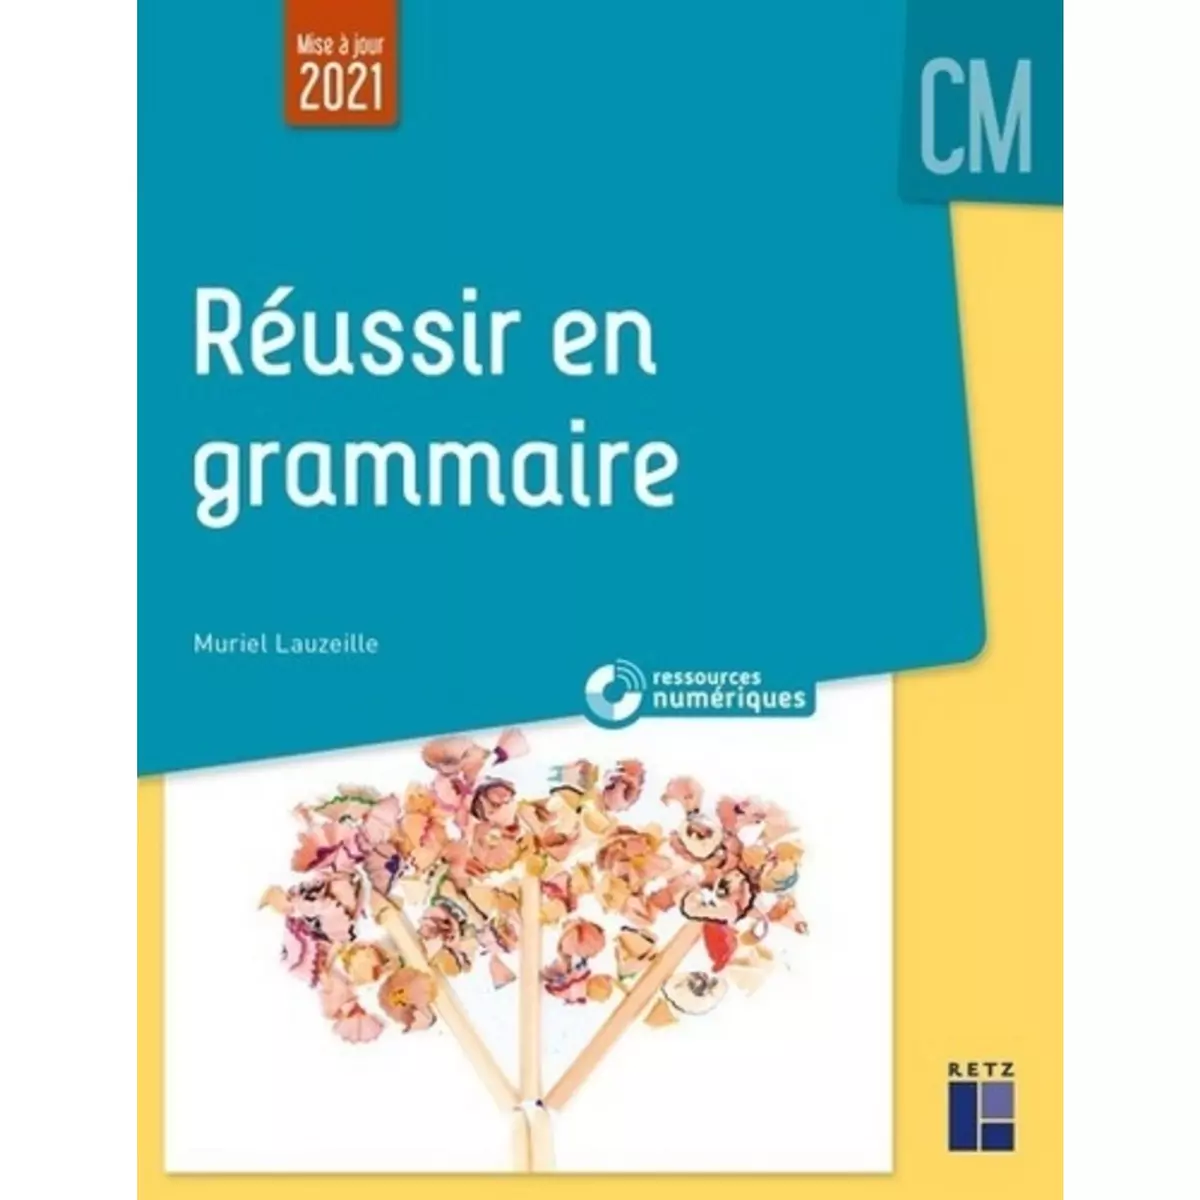  REUSSIR EN GRAMMAIRE AU CM + RESSOURCES NUMERIQUES. EDITION 2021, Lauzeille Muriel